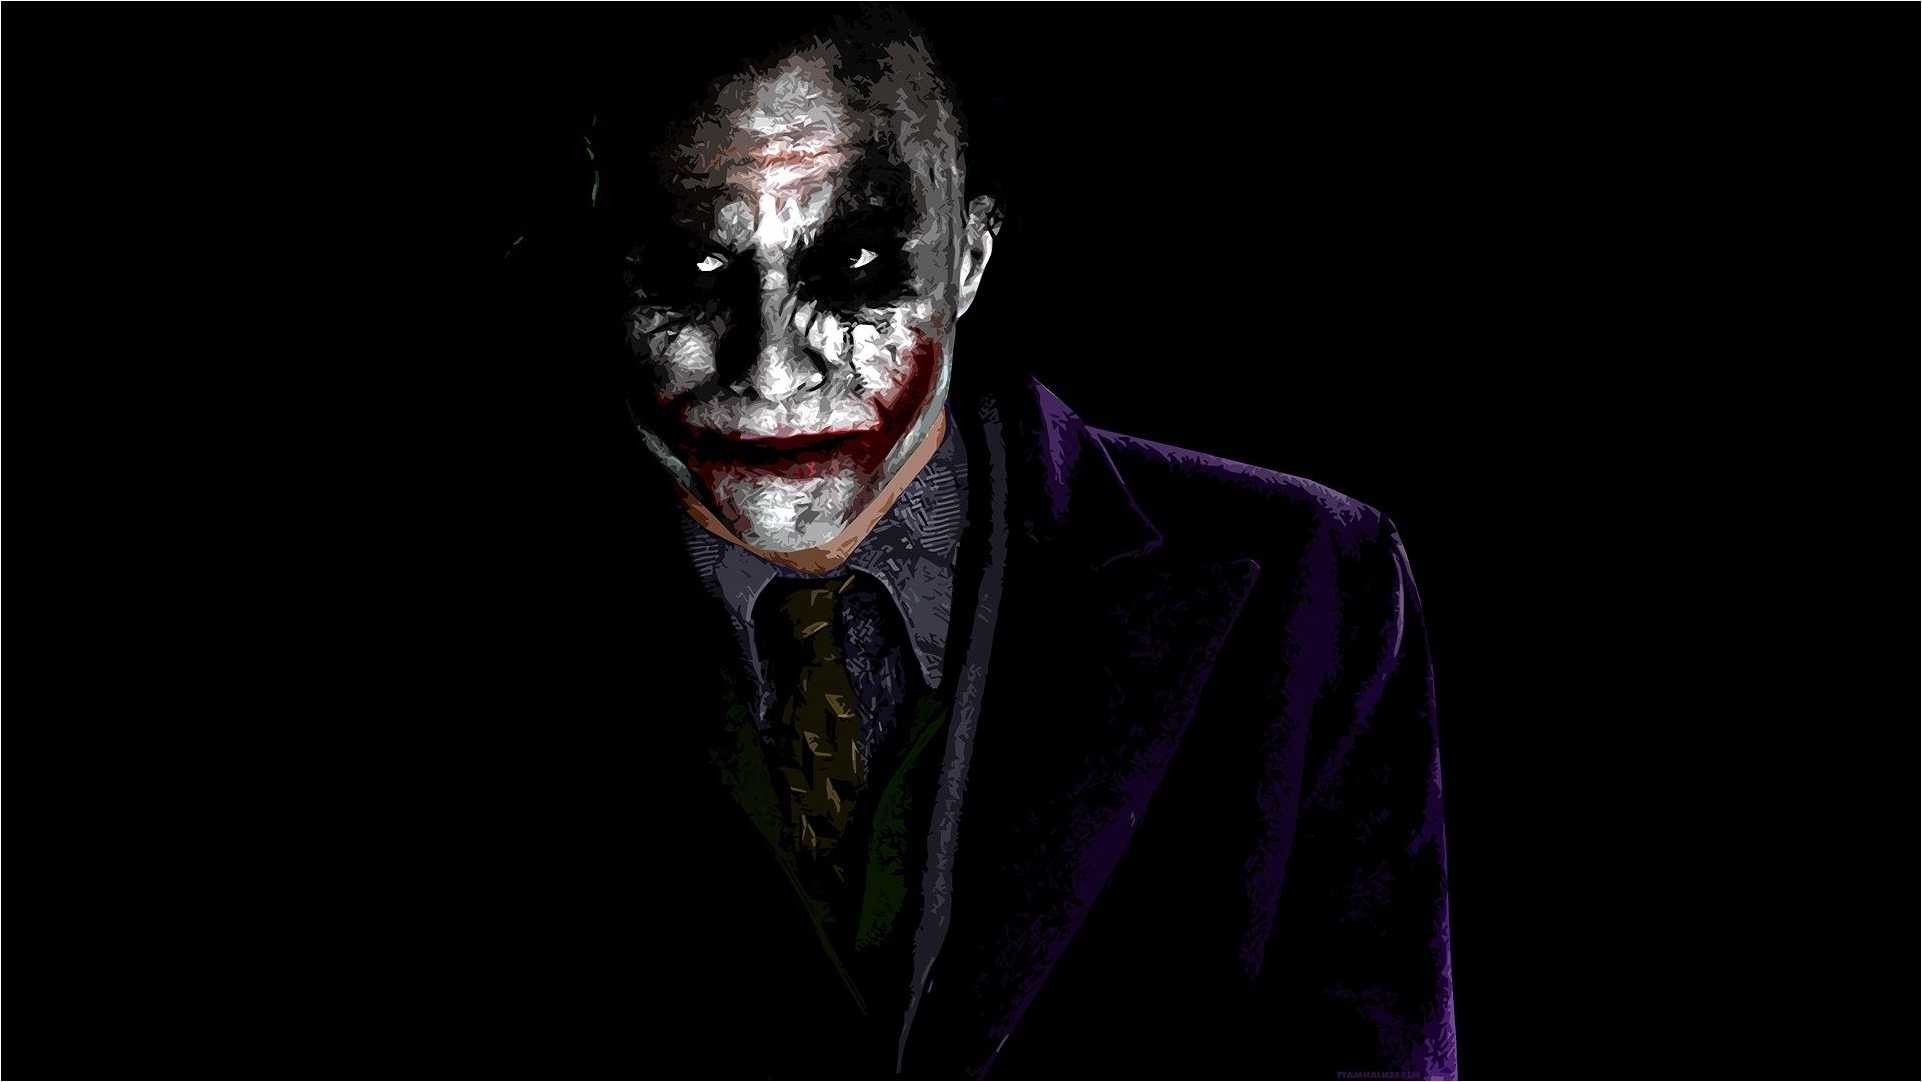 The Joker Tumblr 4k Wallpaper